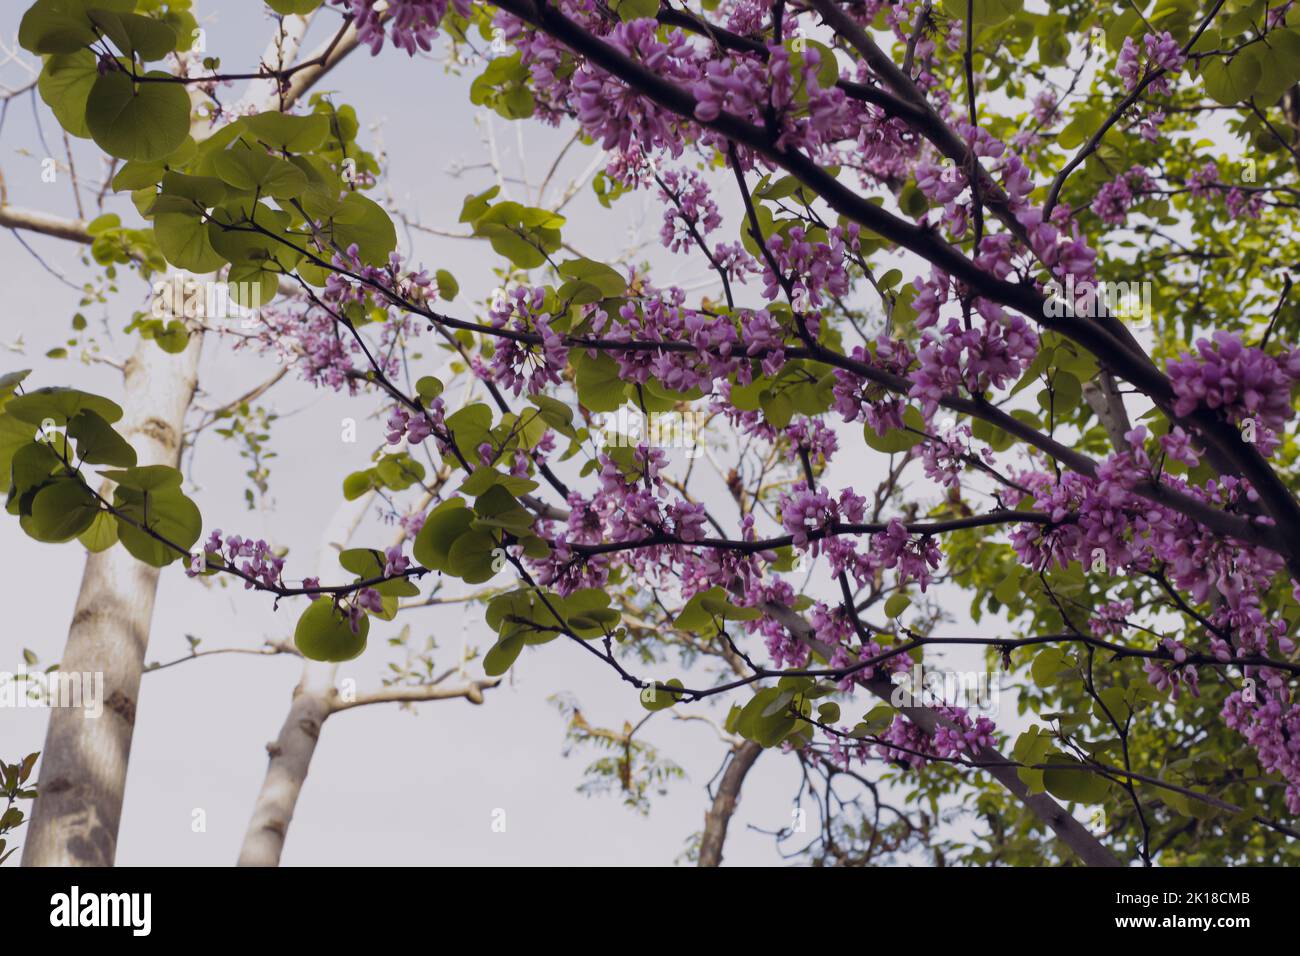 L'arbre de Judas fleurit, de belles fleurs violettes avec des feuilles de vert pastel dans le jardin par une journée ensoleillée. Banque D'Images